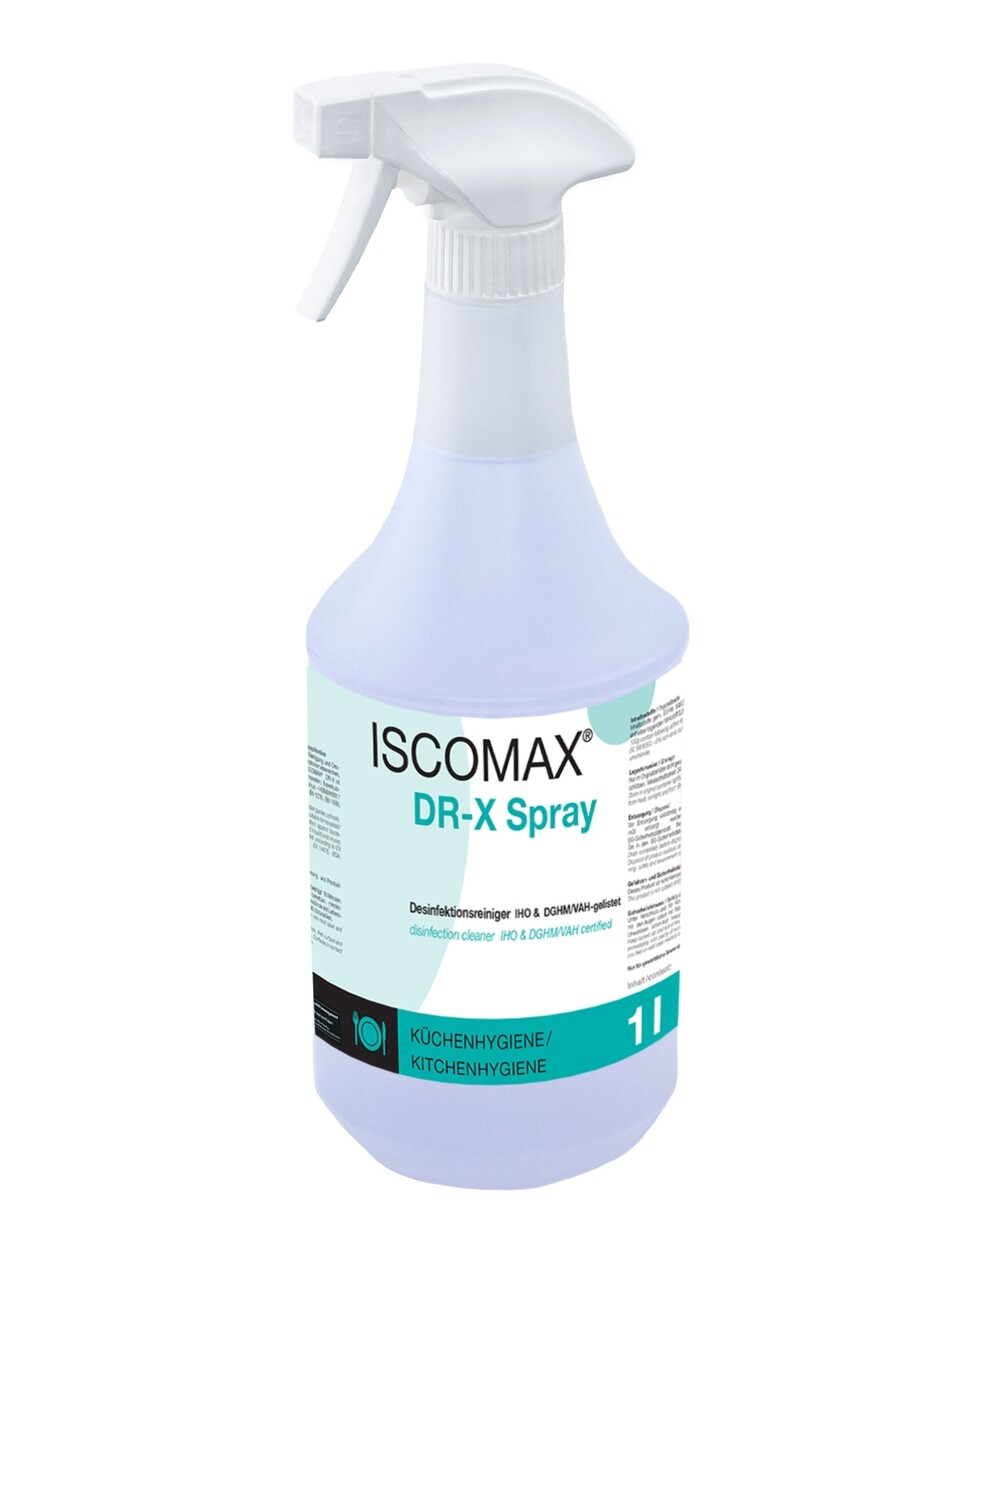 ​ISCOMAX DR-X Spray
Desinfektionsreiniger, gebrauchsfertig. VAH- und IHO-gelistet